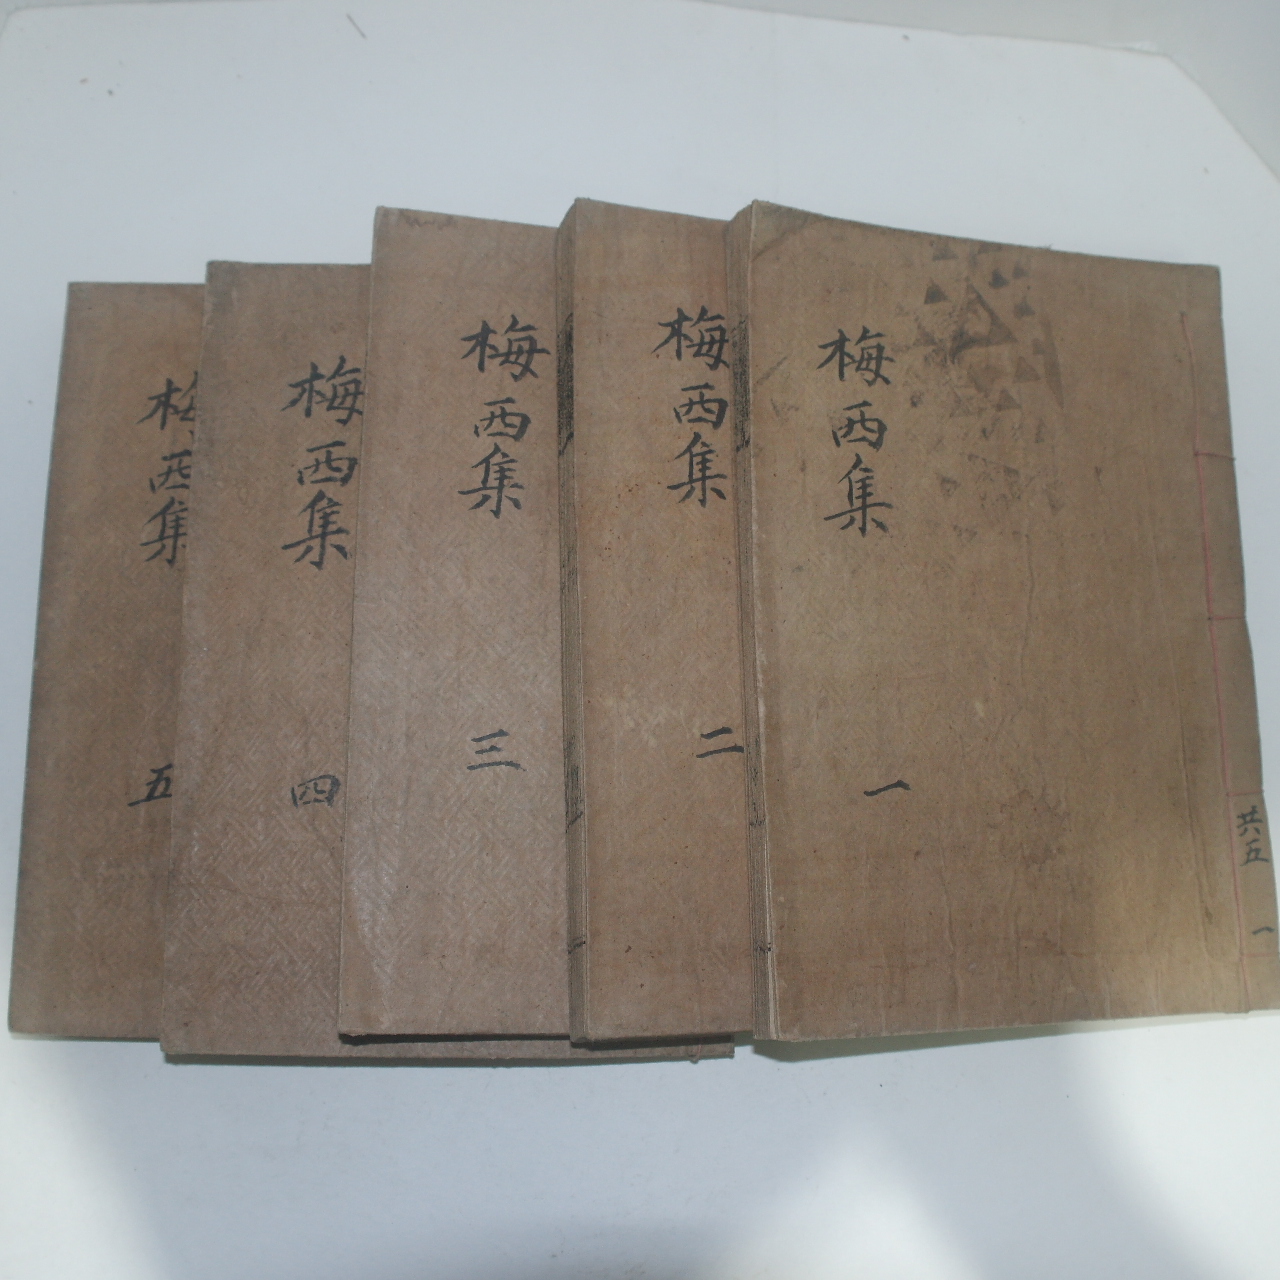 1945년 김극영(金克永) 신고당유집(信古堂遺輯) 12권5책완질